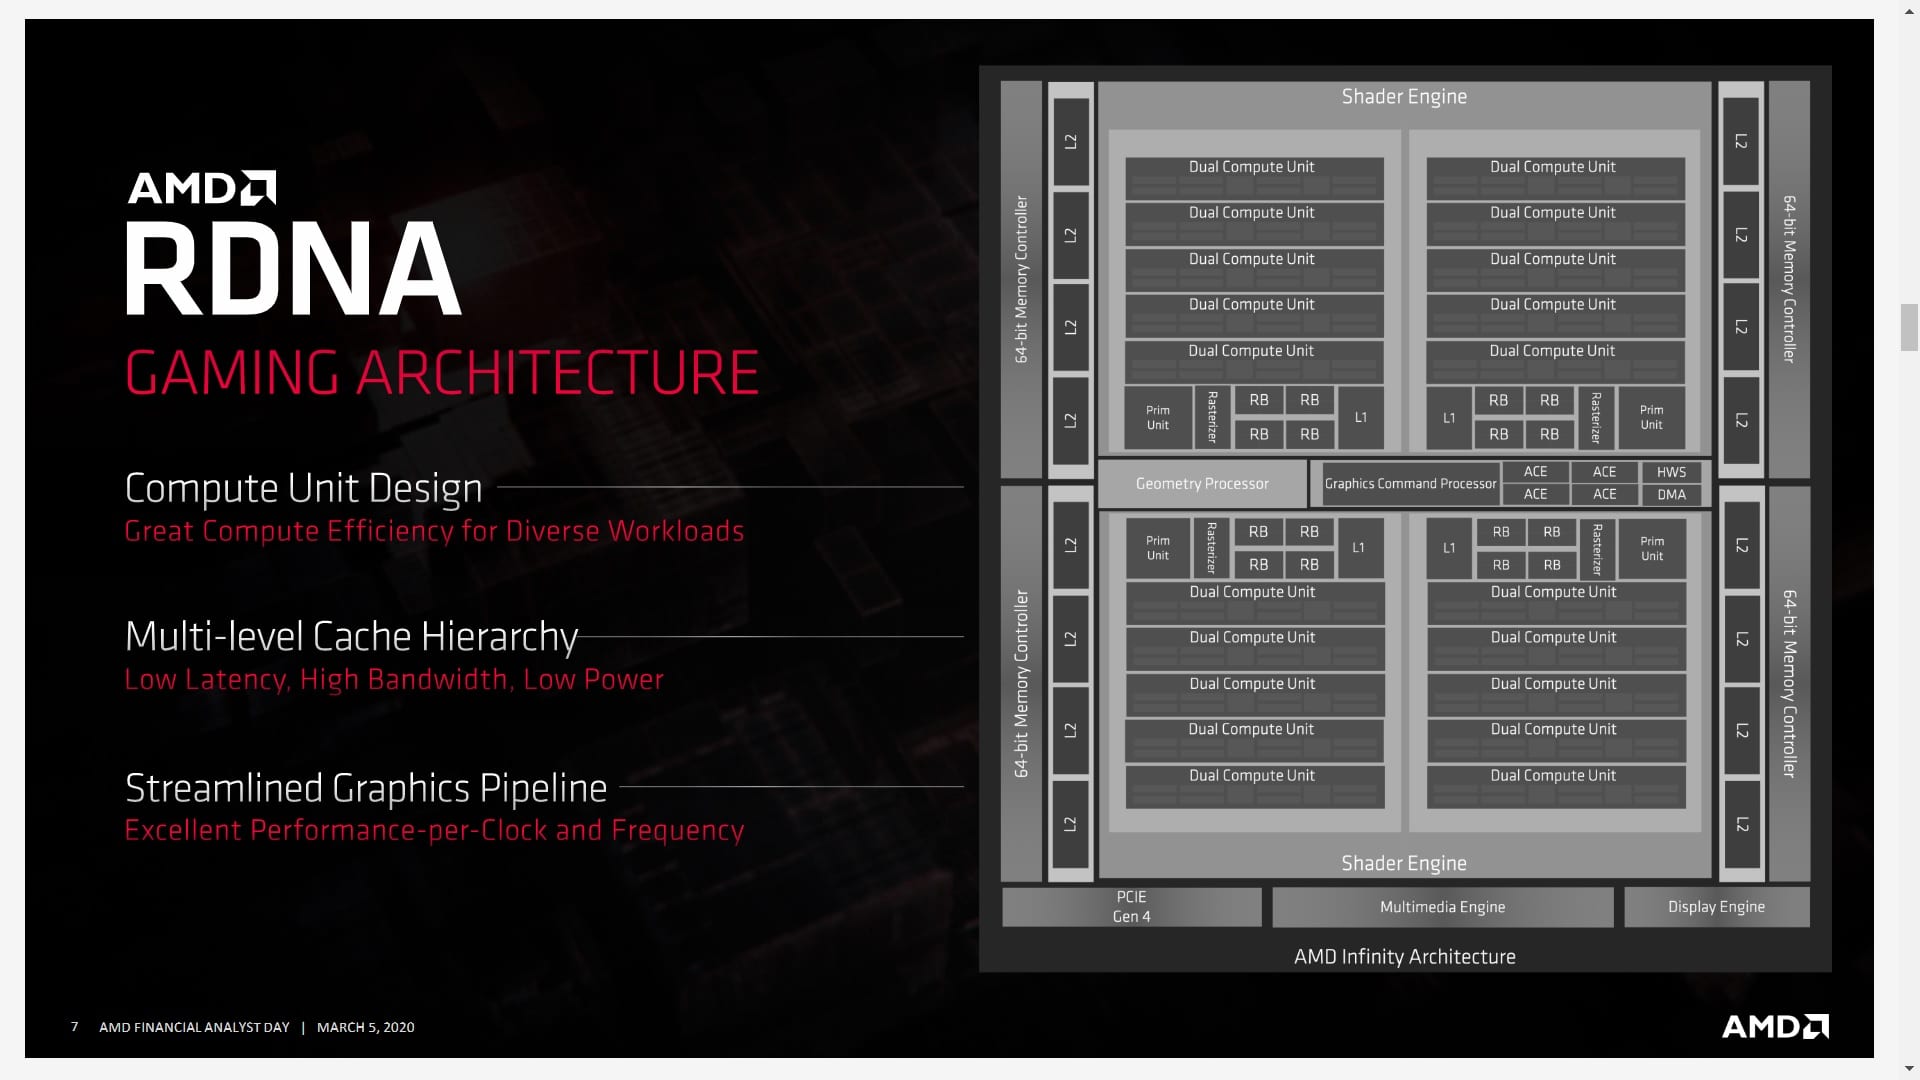 AMD RDNA Architecture